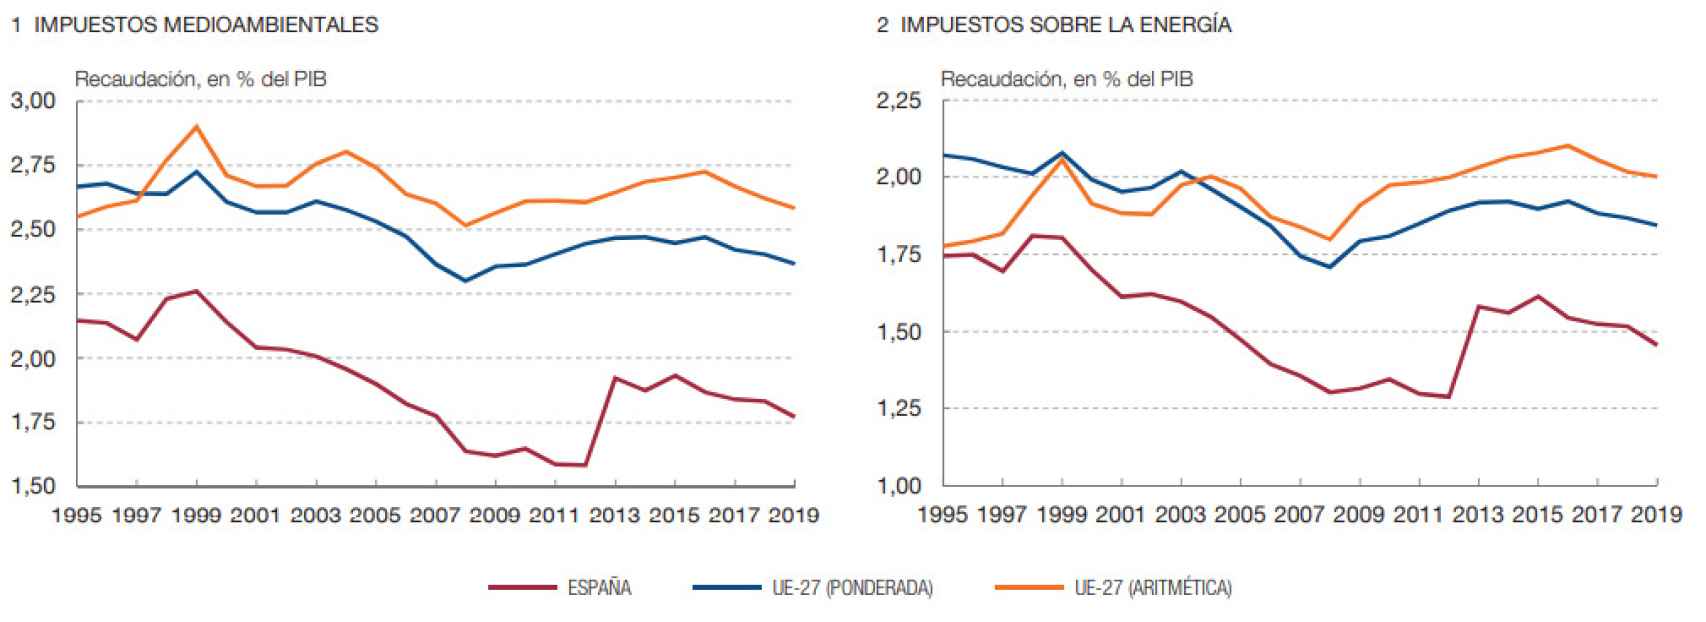 Fuente Eurostat / Banco de España